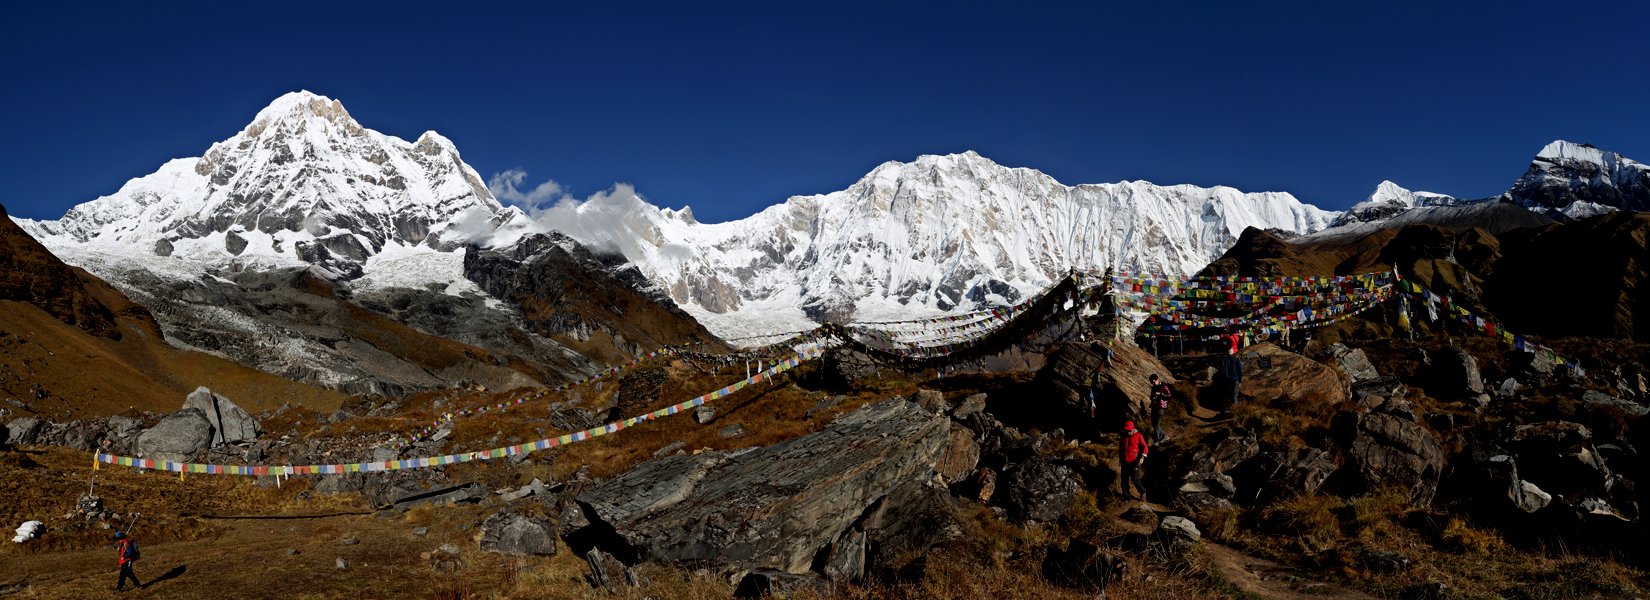 Annapurna Himalayan trek